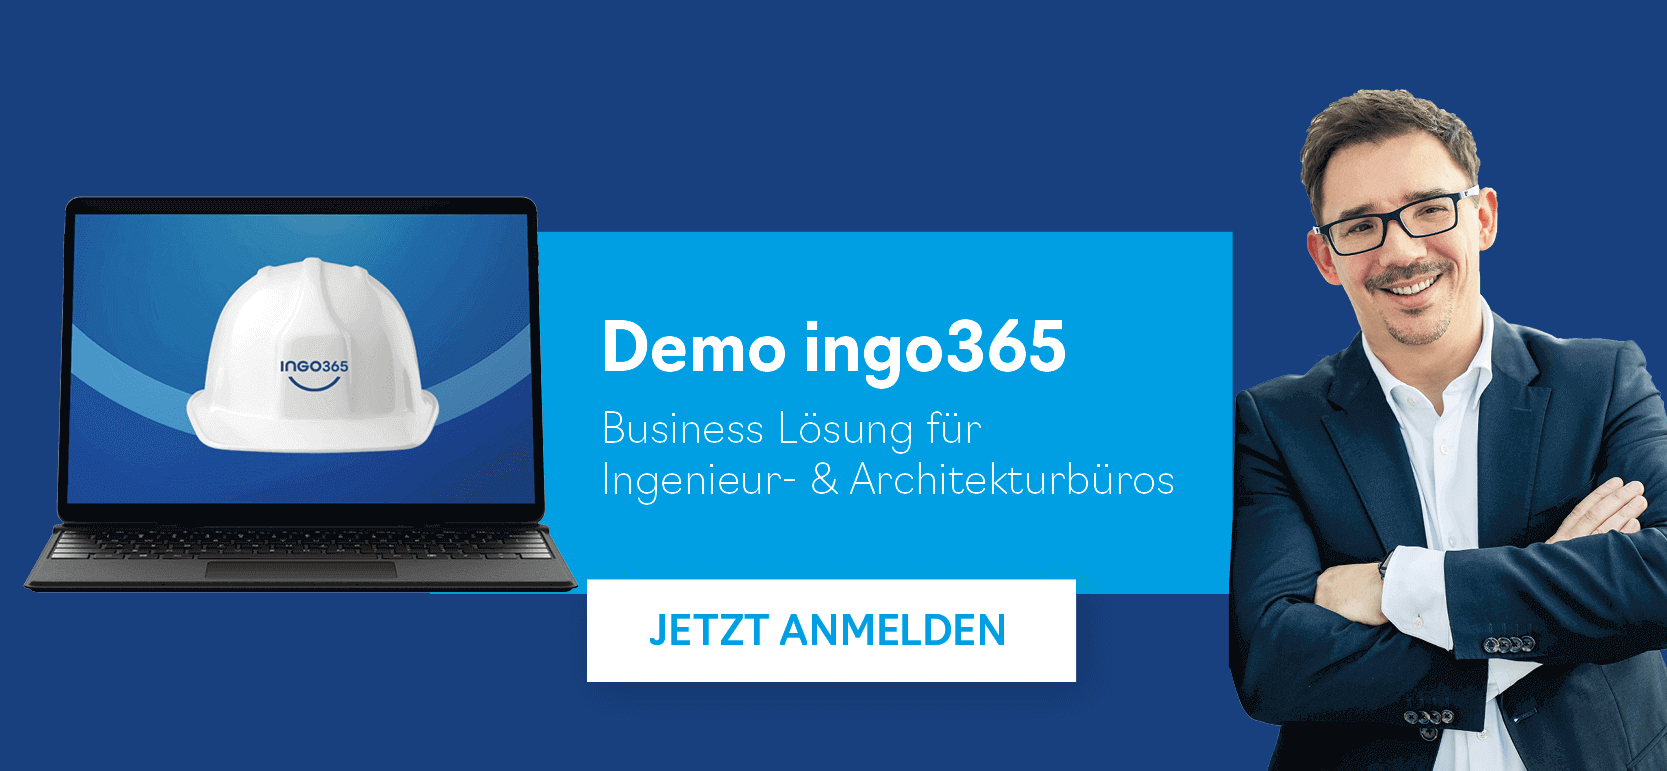 Online Demo ingo365 für Planungsbüros